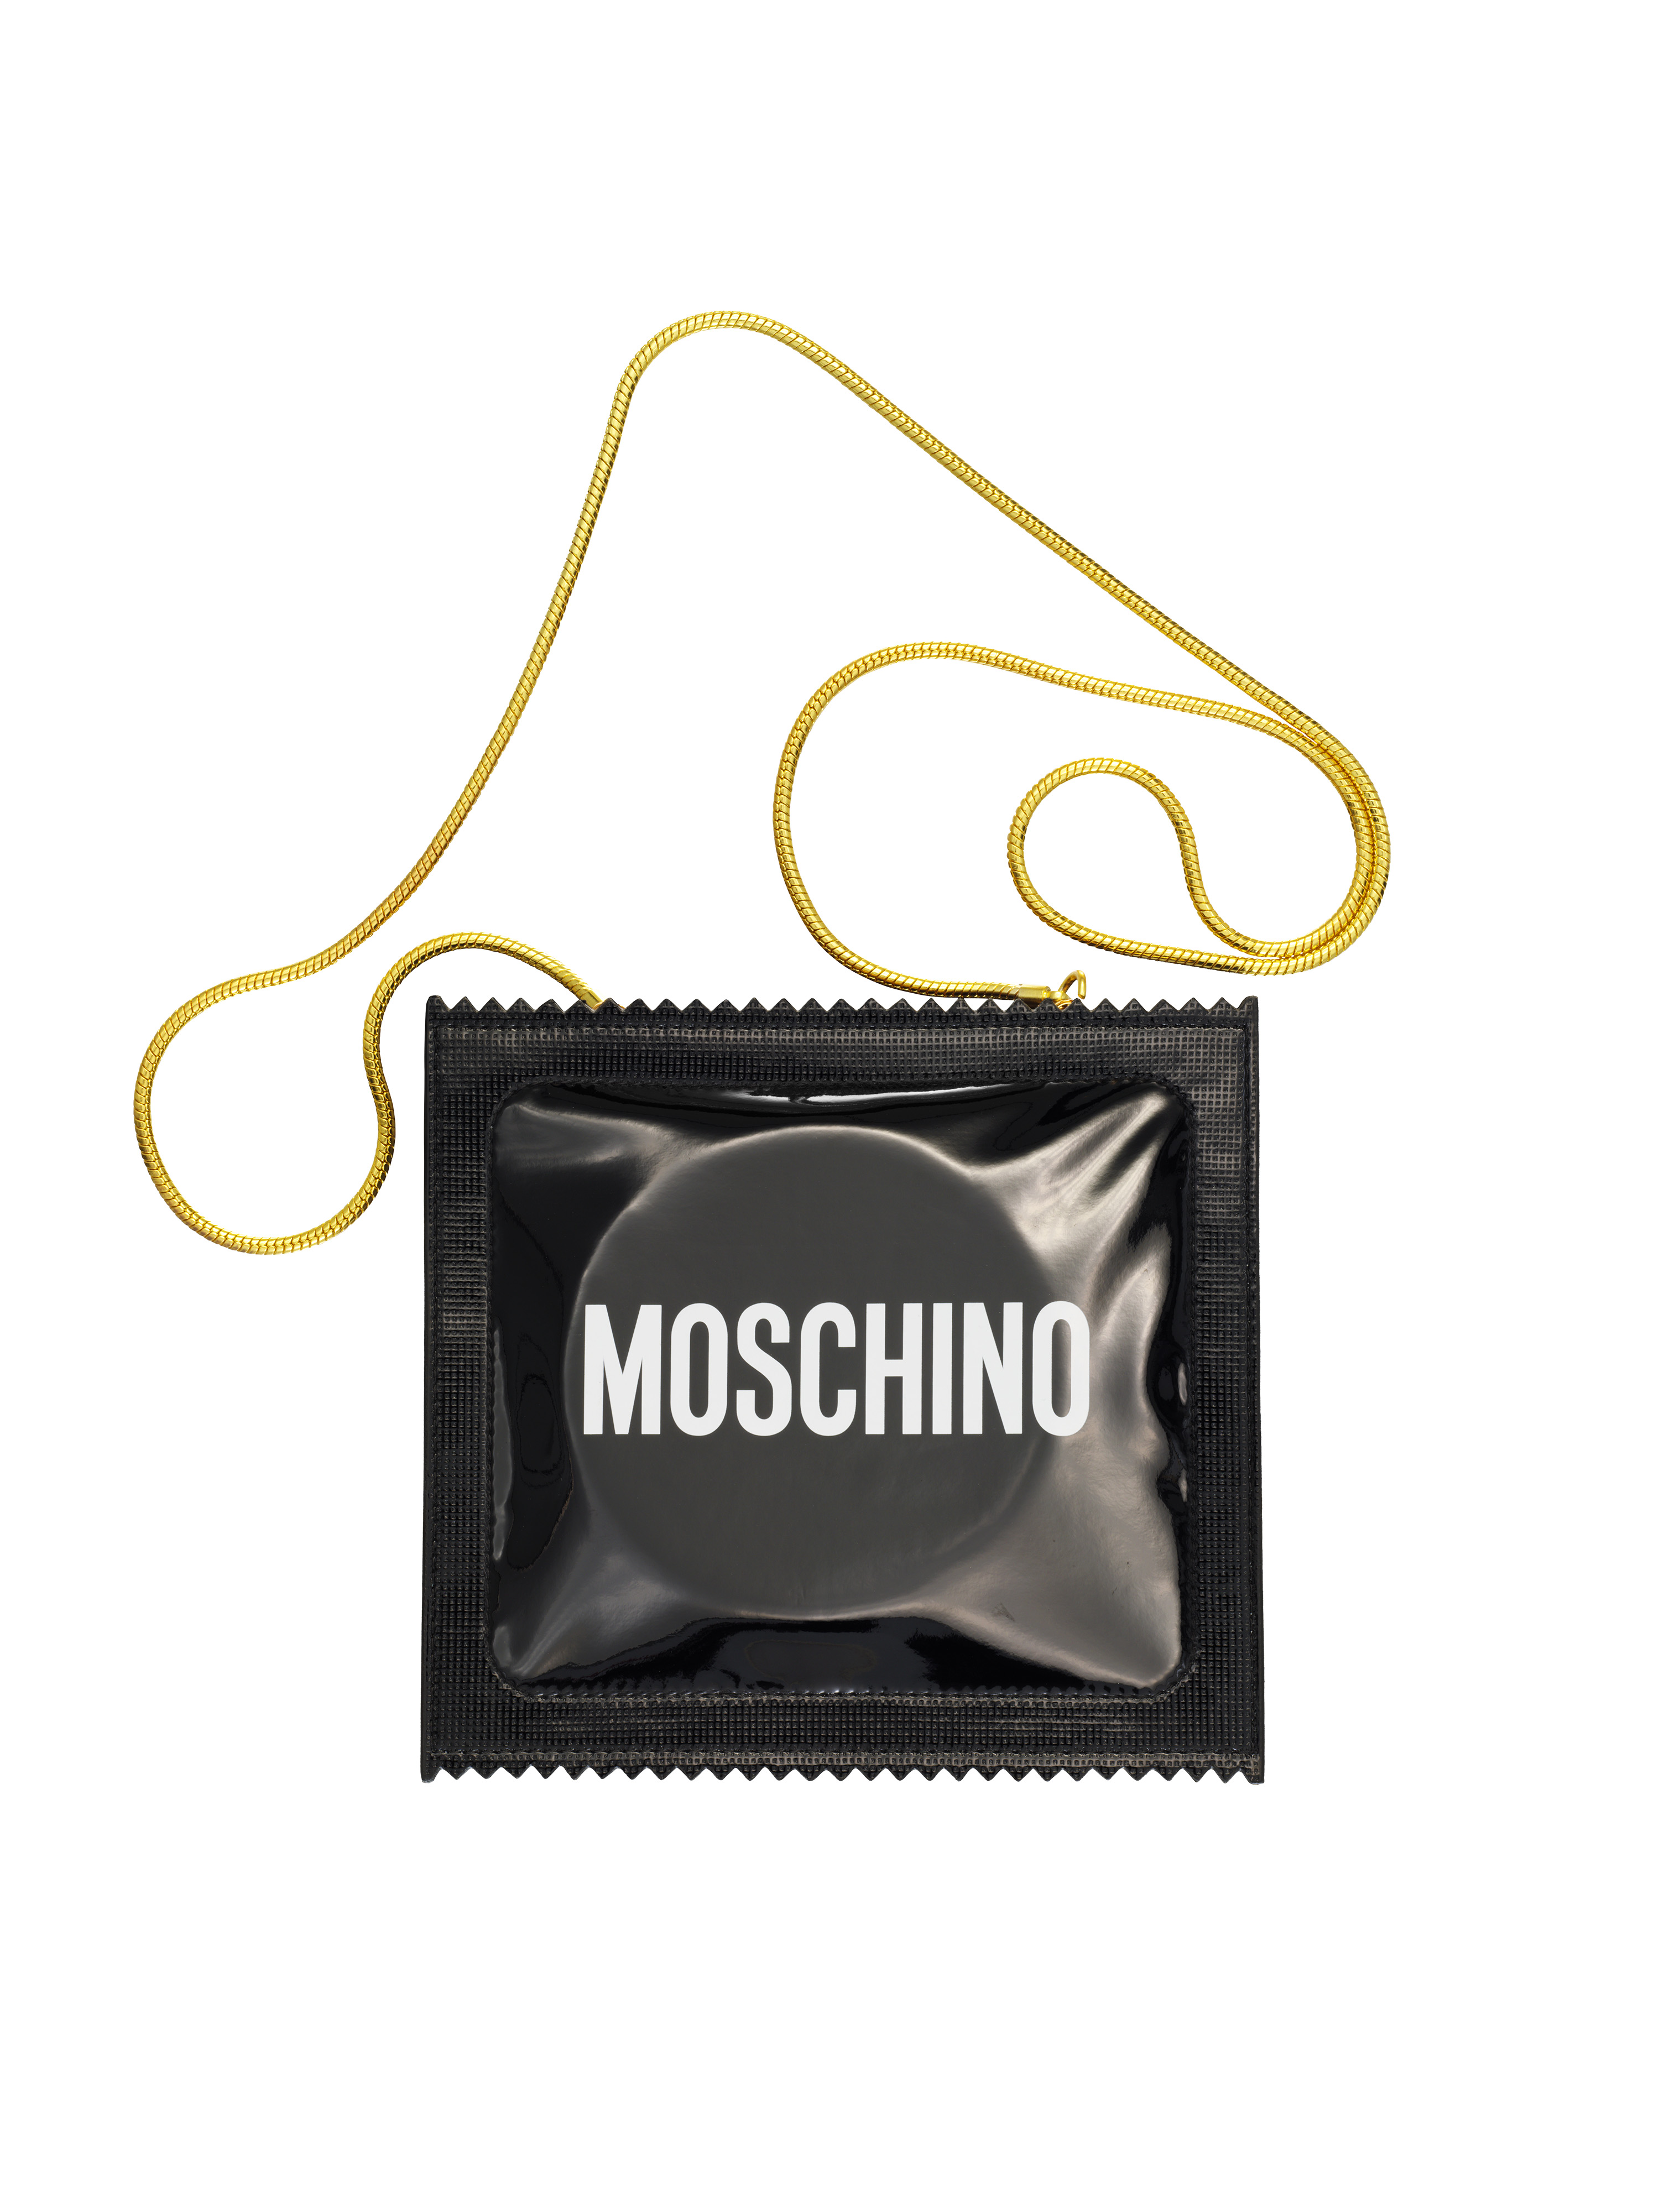 MOSCHINO [TV] H&M Condom Clutch $159.00